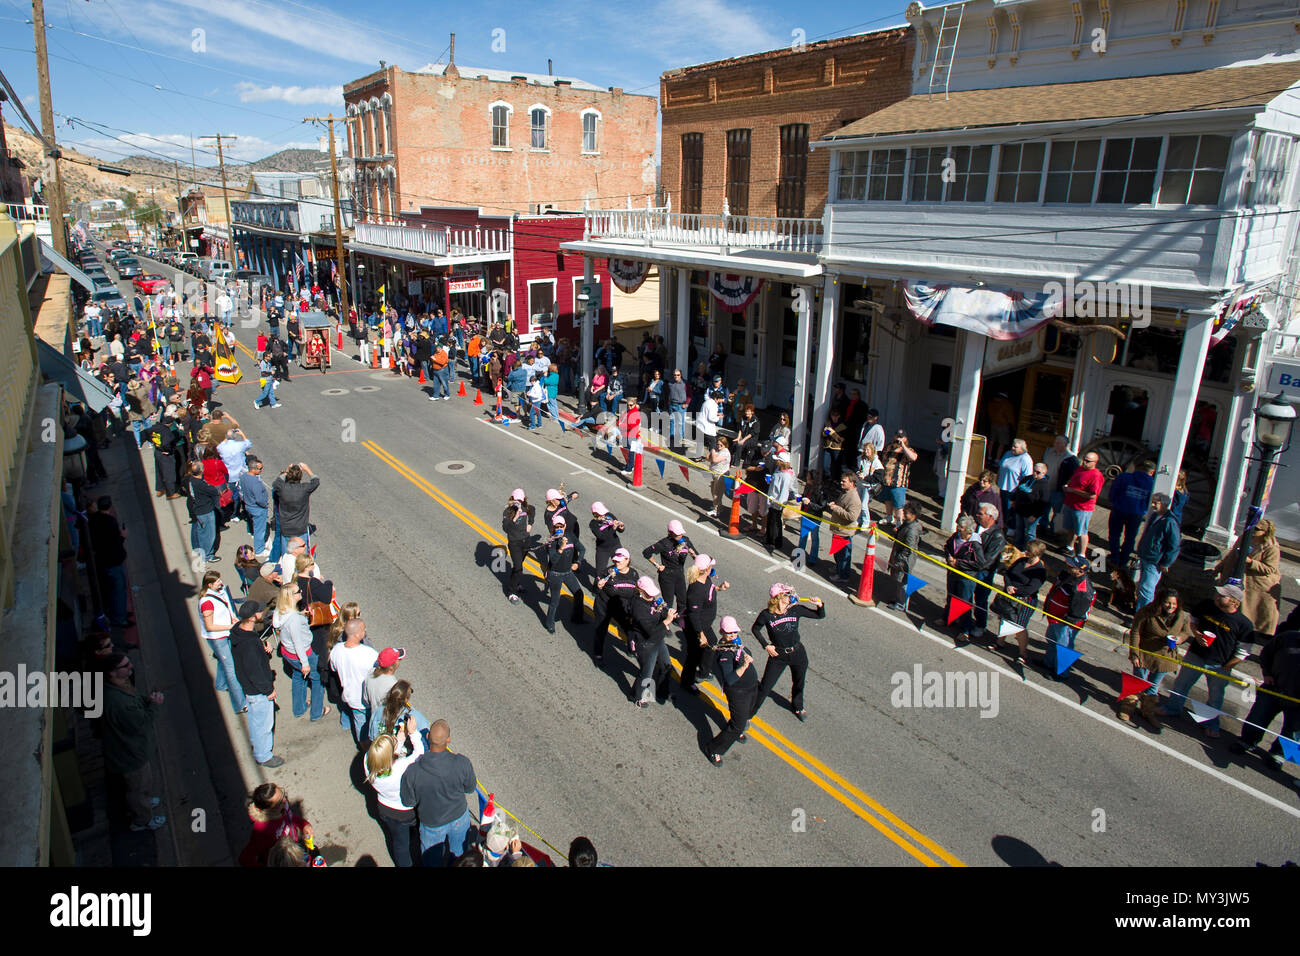 La tasa anual de Virginia City, Nevada, letrina carreras, una de las más peculiares celebraciones del viejo oeste que se pueden encontrar. Foto de stock